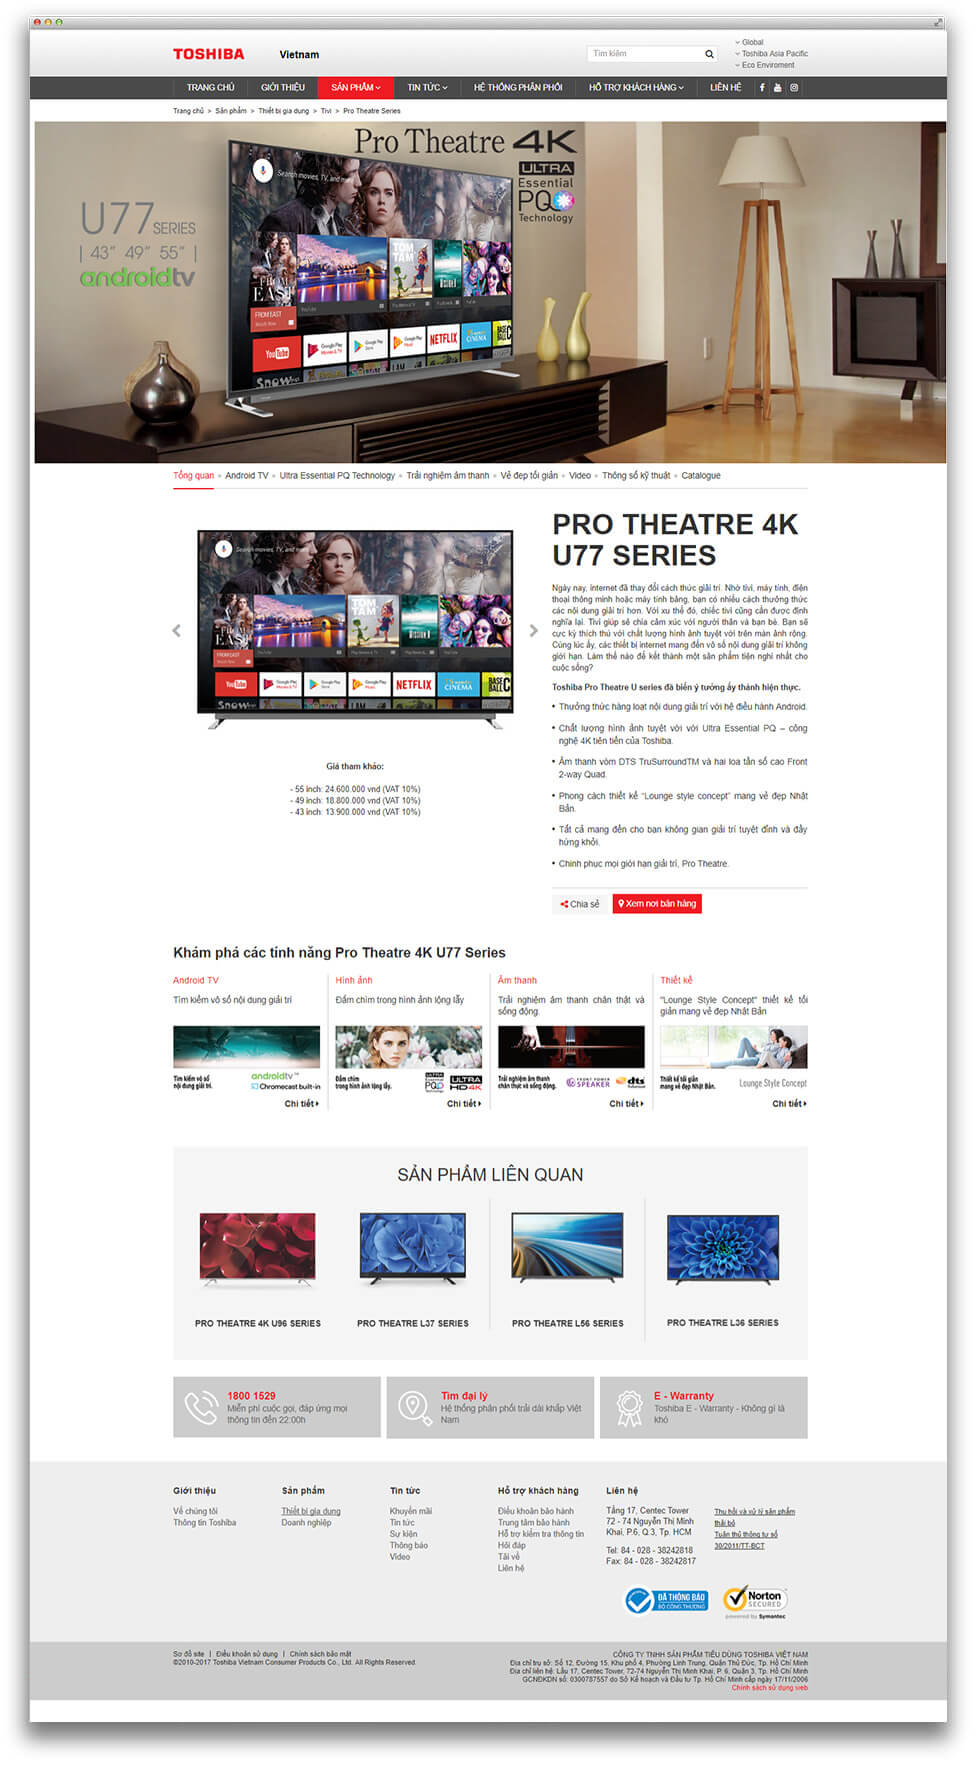 Thiết kế website thương hiệu cho Toshiba ảnh 2